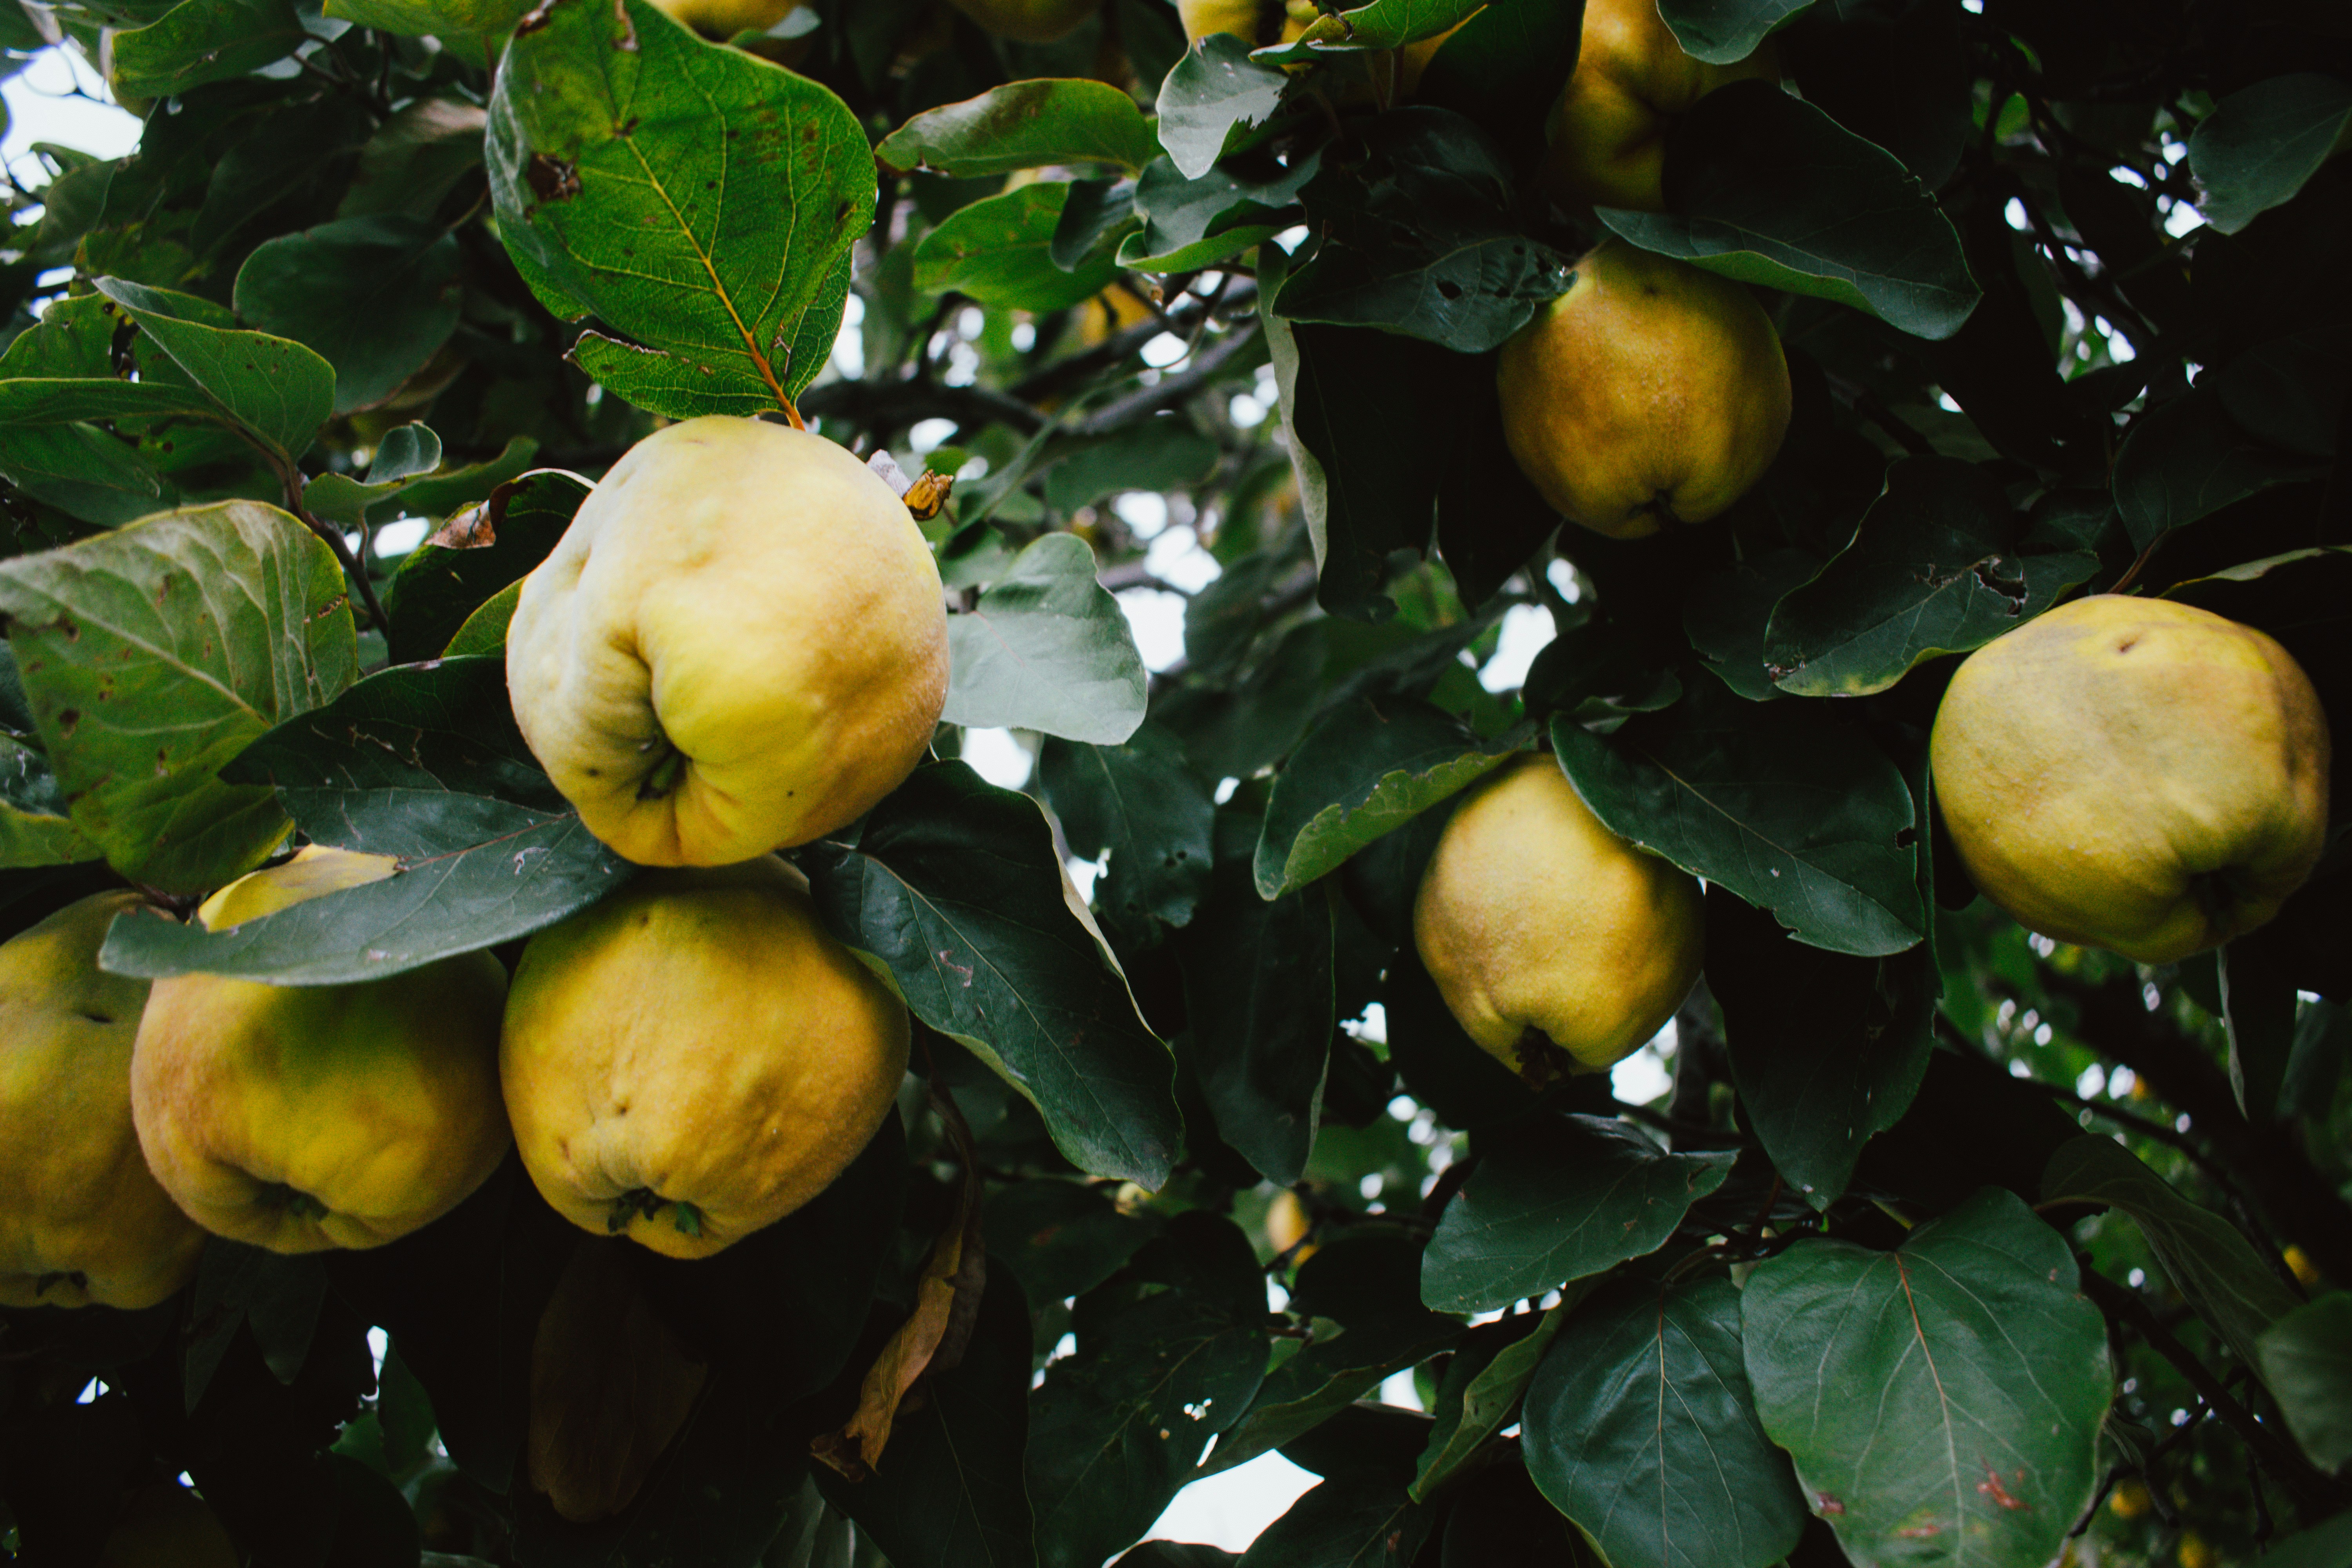 découvrez tous les secrets de la délicieuse quince, un fruit sucré avec une saveur unique et une texture croquante. apprenez comment l'utiliser en cuisine et ses bienfaits pour la santé.